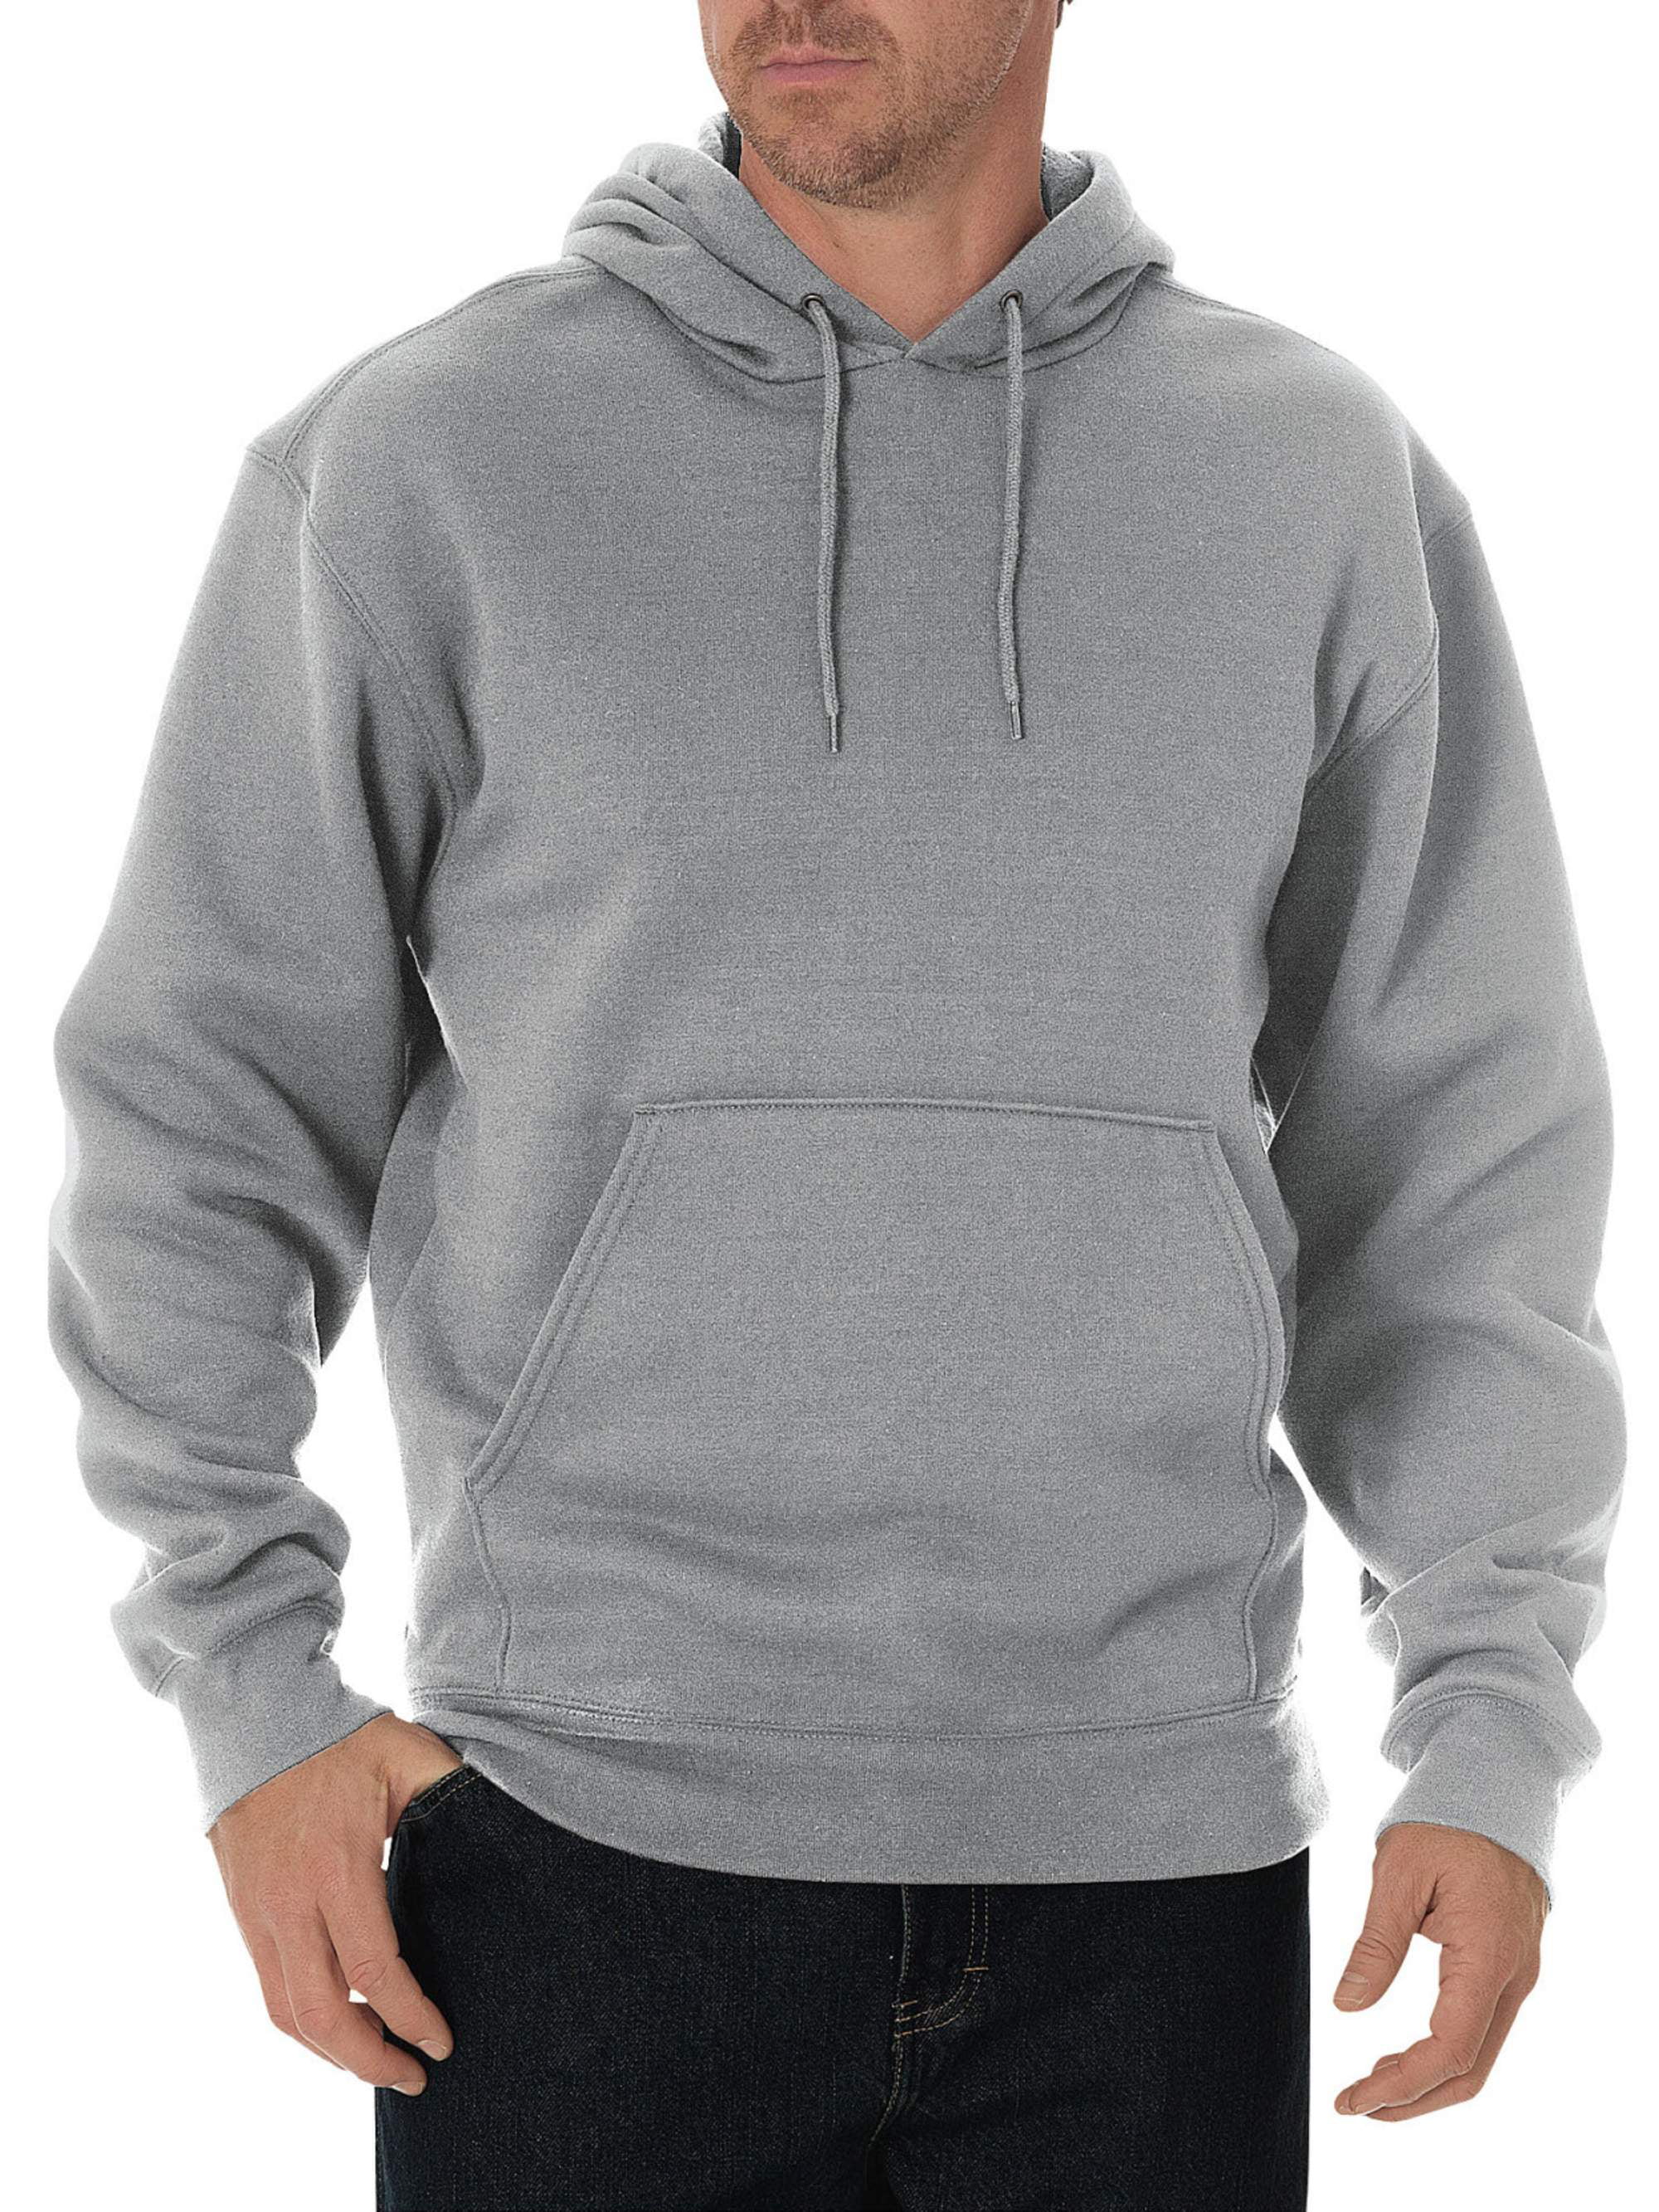 Men's Midweight Fleece Pullover Hoodie - Walmart.com